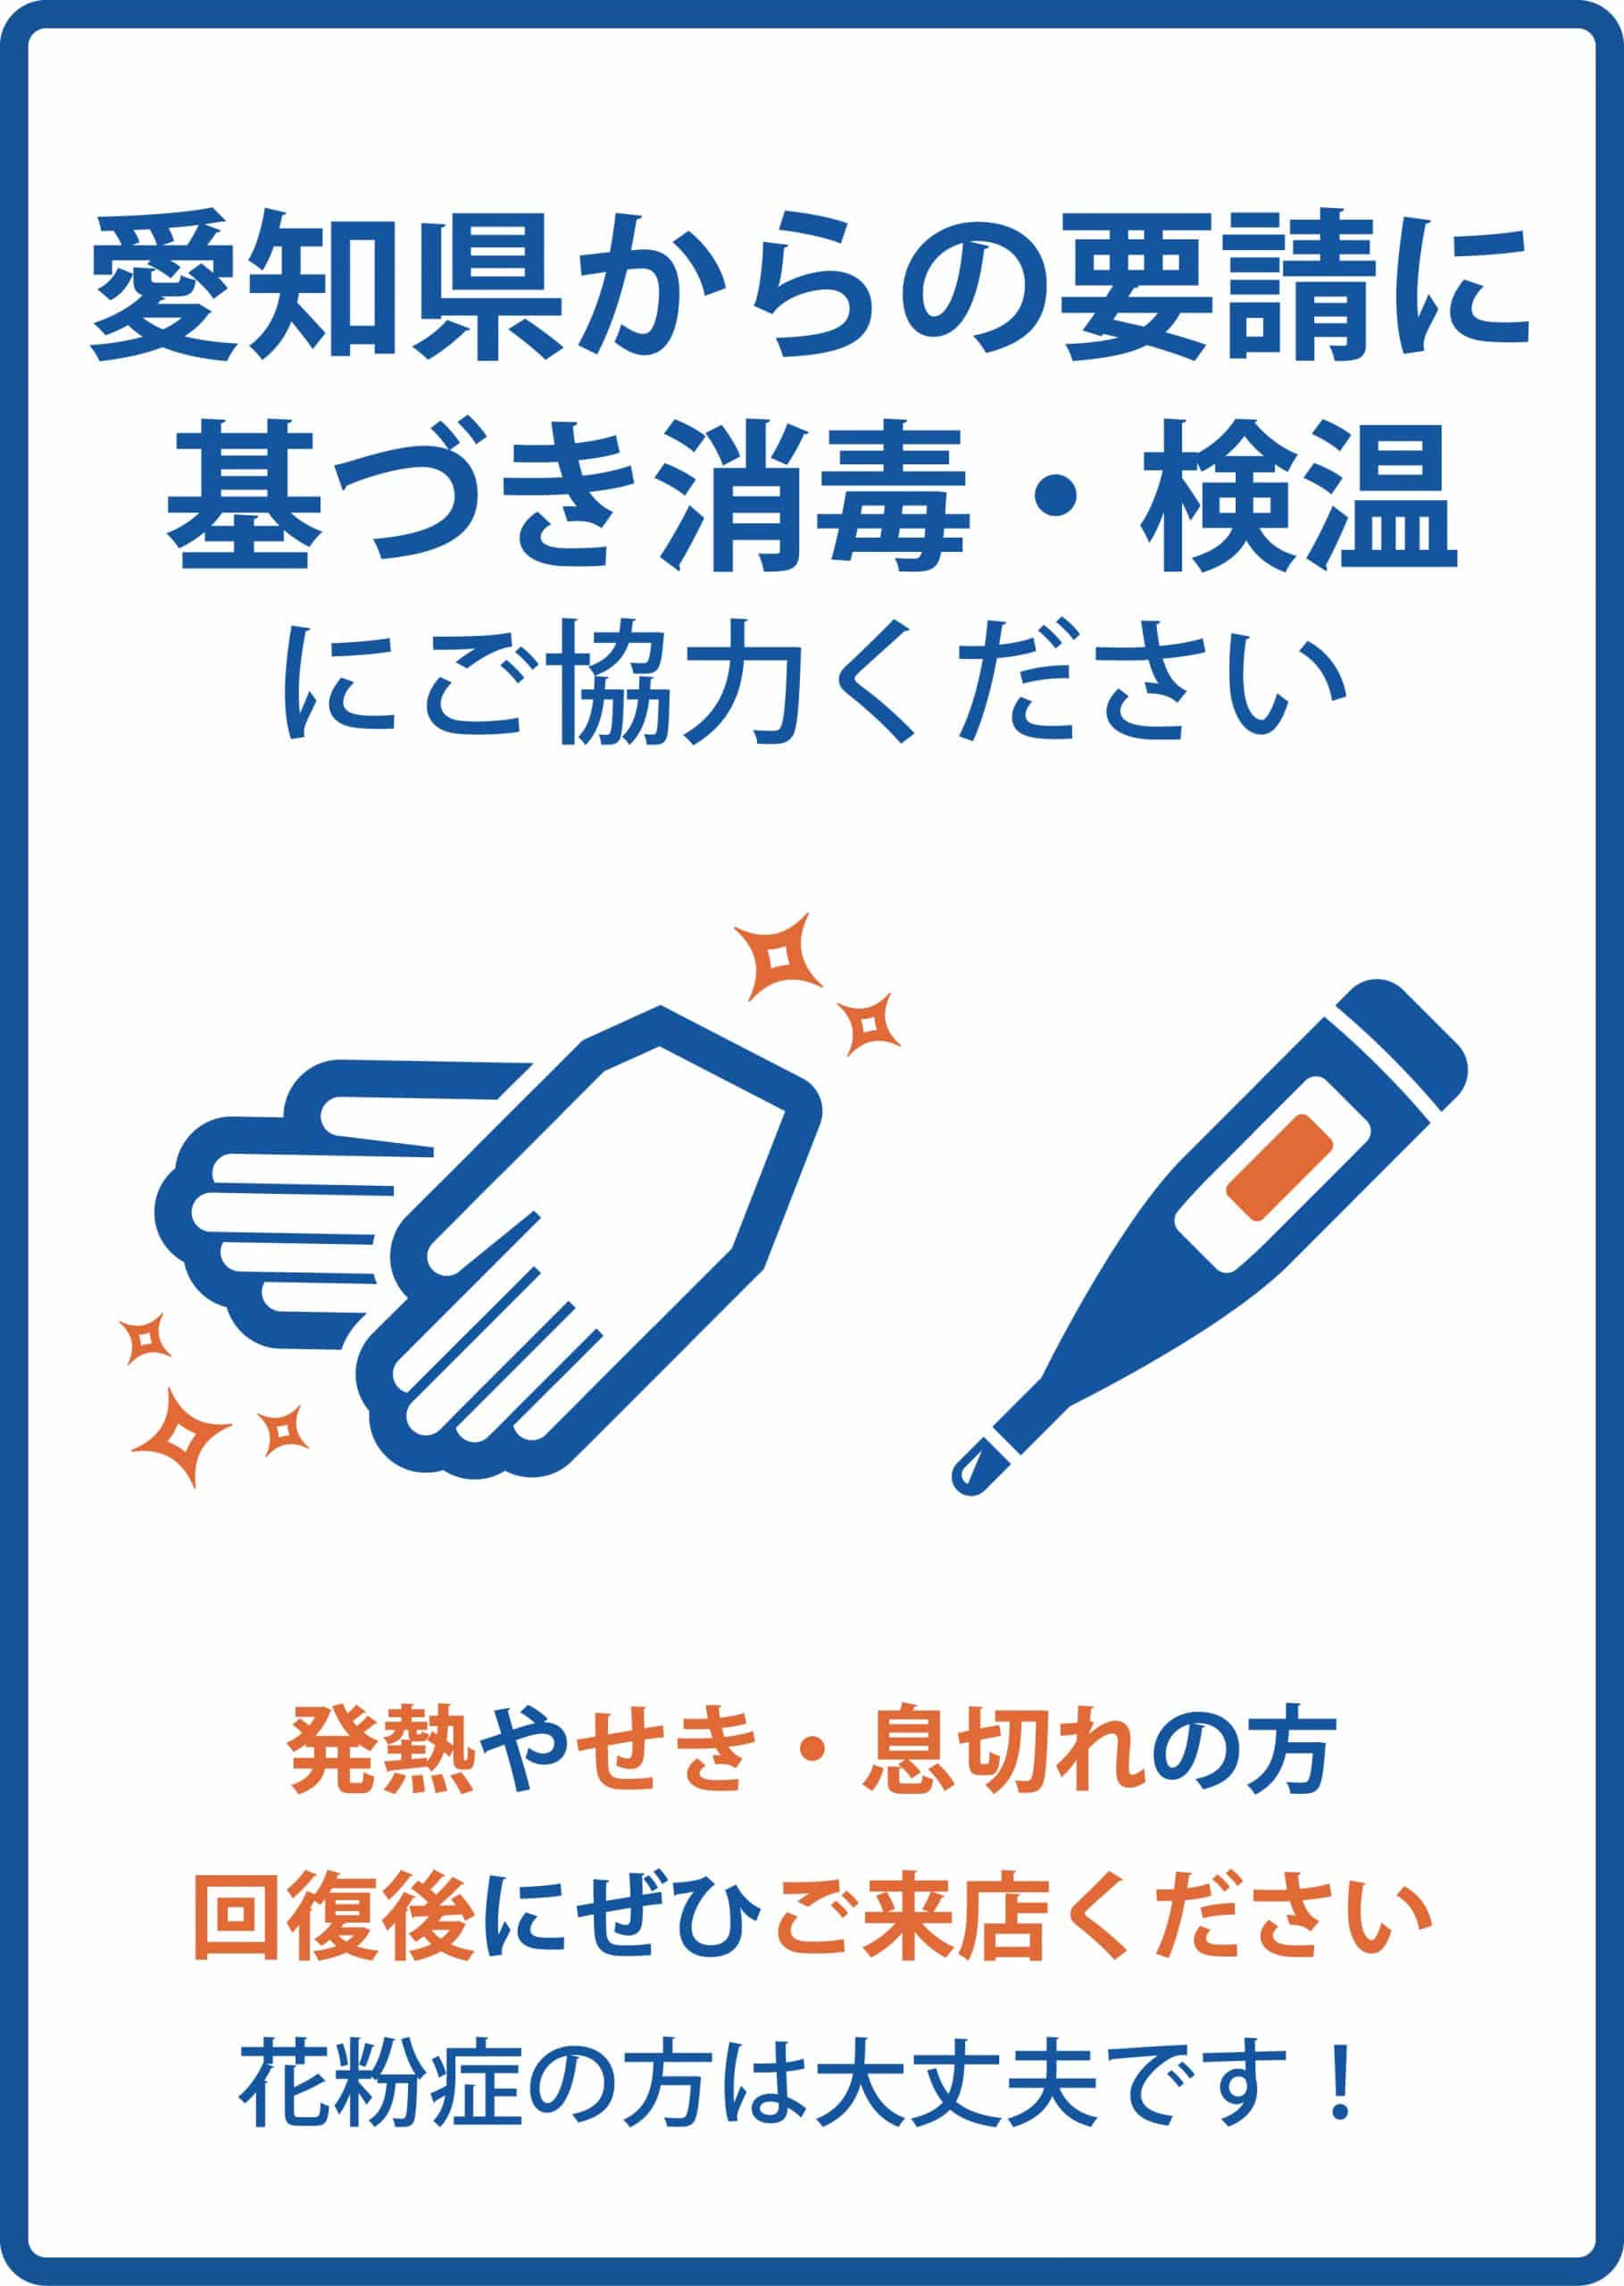 愛知県からの要請に基づき消毒・検温にご協力ください